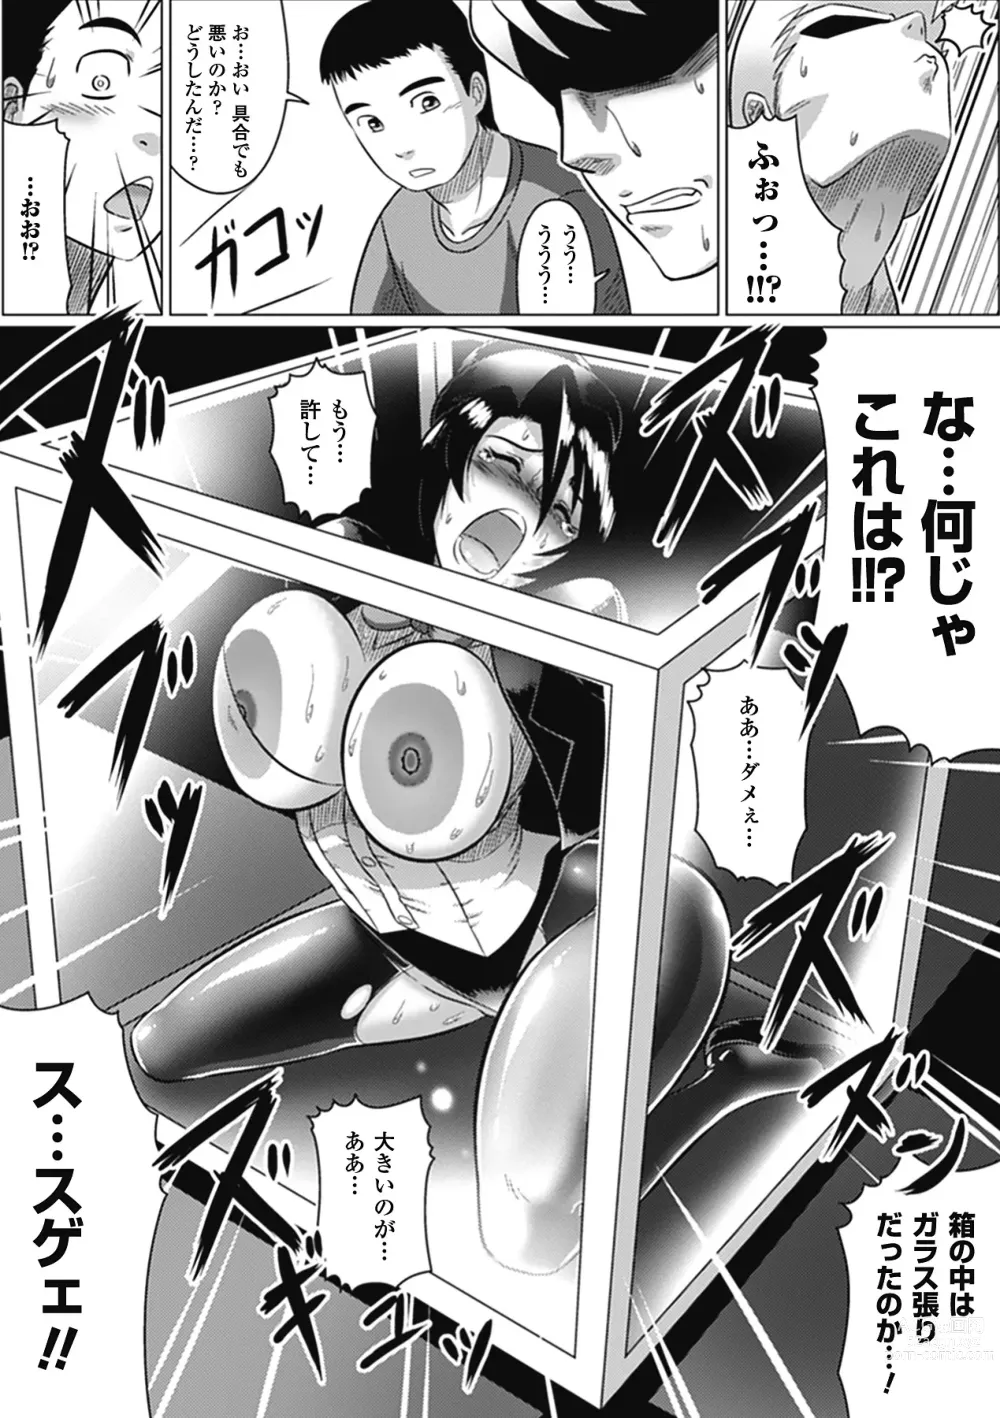 Page 168 of manga Ochita Tenshitachi no Zanei